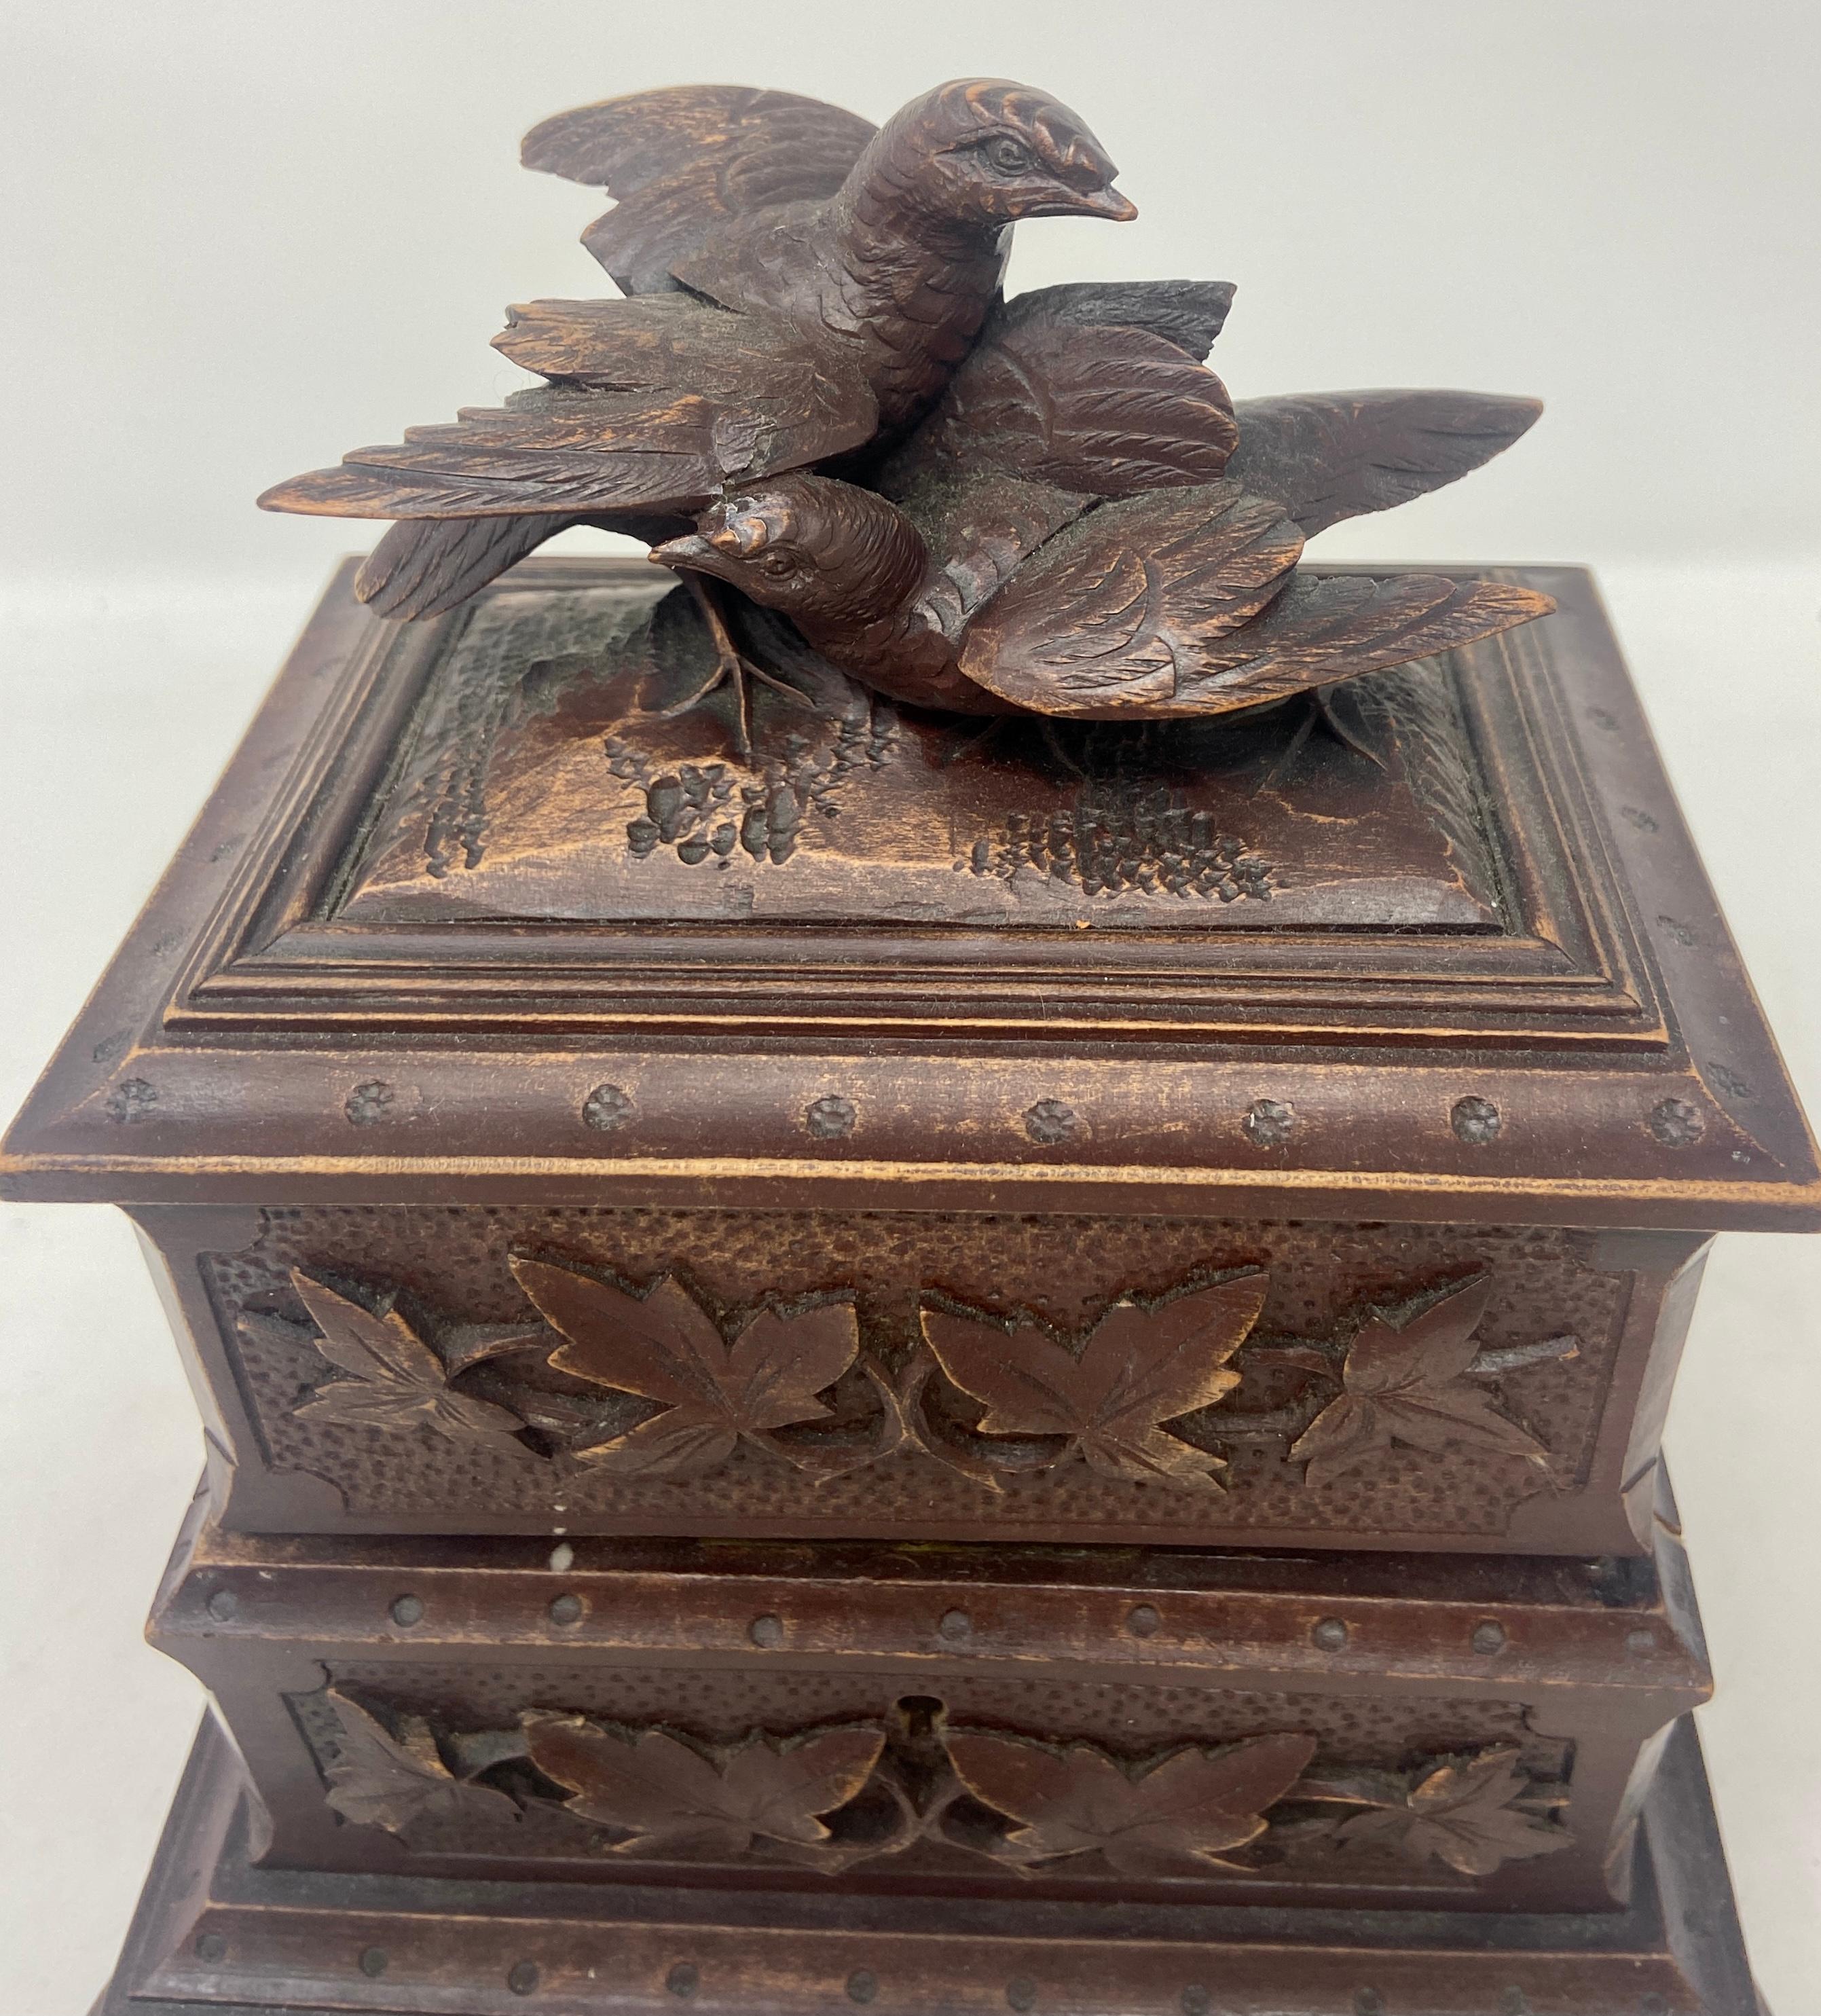 Boîte à bijoux française ancienne en noyer sculpté, Circa 1880-1890. Magnifiquement sculpté avec des inséparables et du feuillage, et avec 3 compartiments nouvellement doublés à l'intérieur.